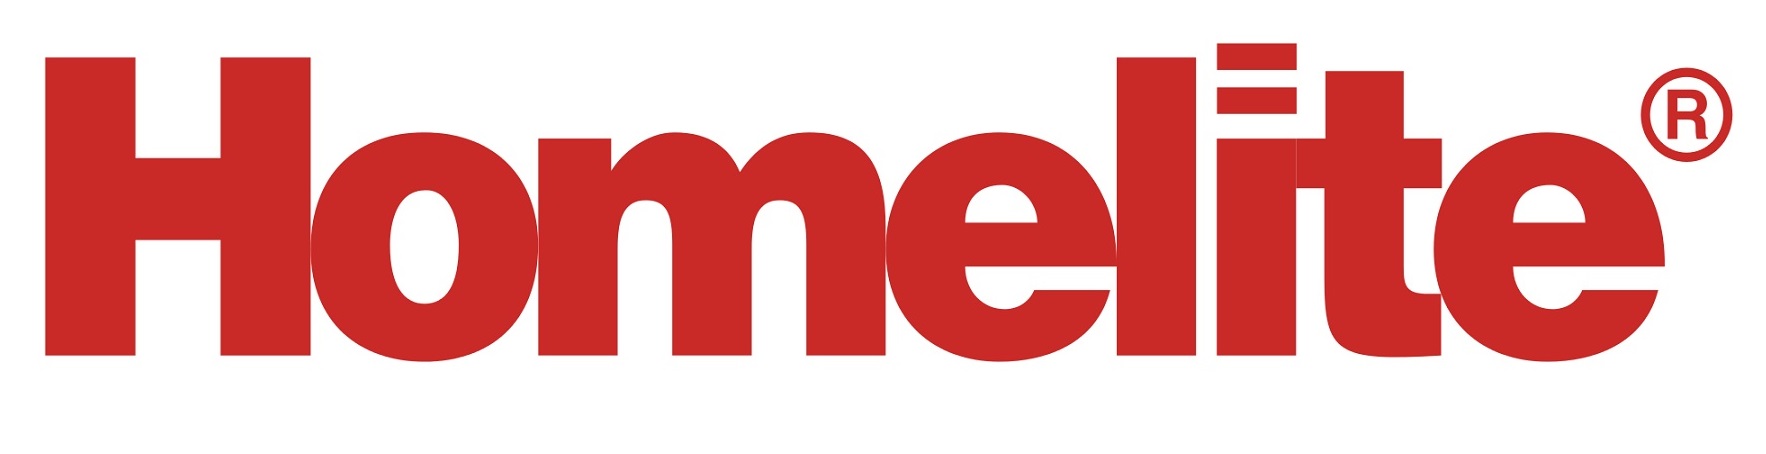 Логотип бренда Homelite